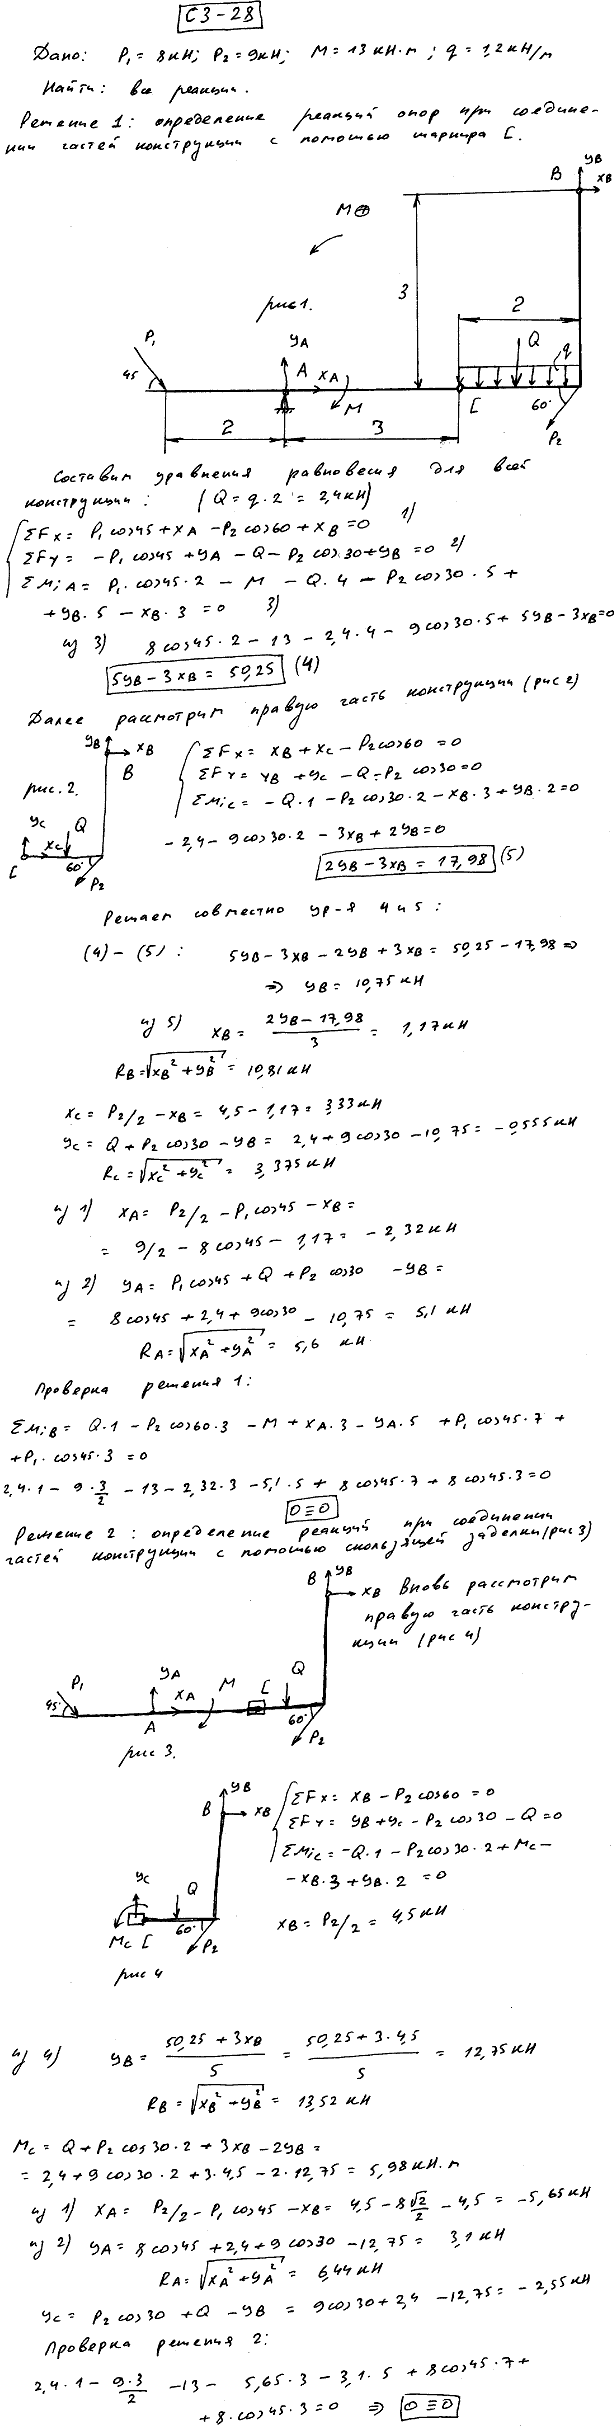 Задание C3 вариант 28. P1=8 кН; P2=9 кН; M=13 кН*м; q=1,2 кН/м; исследуемая реакция RA; вид скользящей заделки